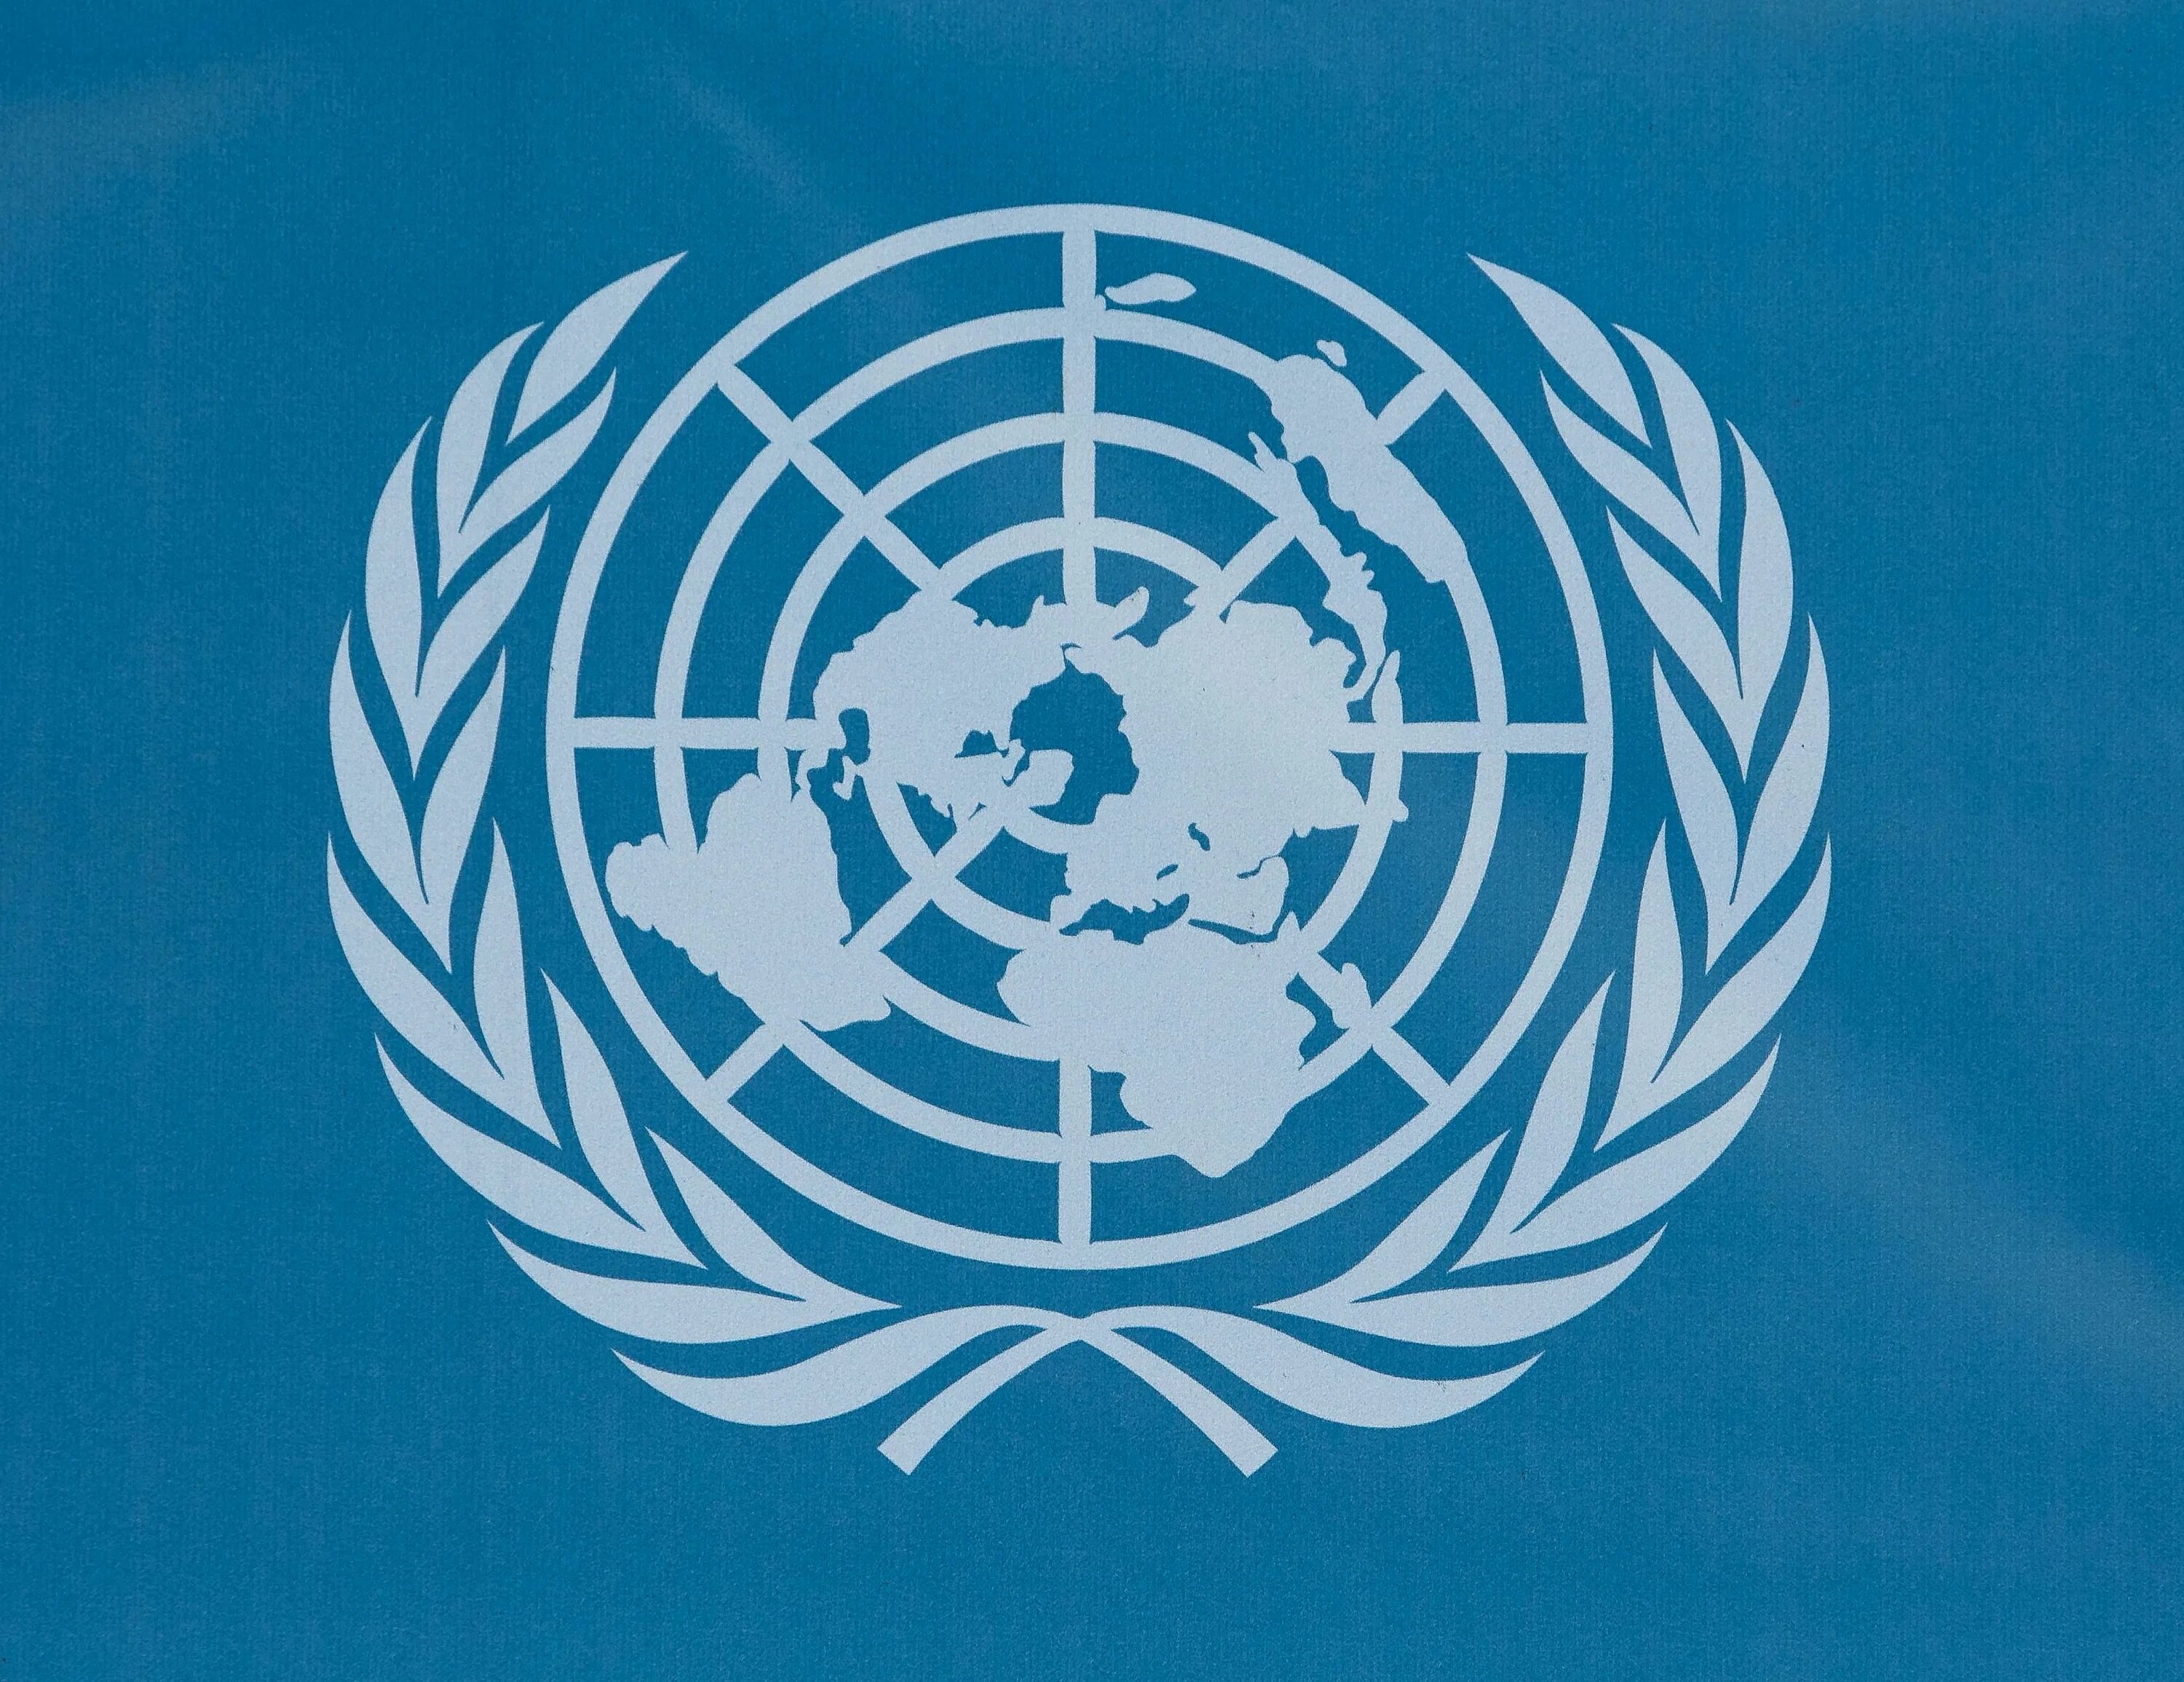 Организация Объединенных наций (ООН). Международные организации ООН. Oont. Организация Объединенных наций эмблема. Конвенция о гармонизированной системе